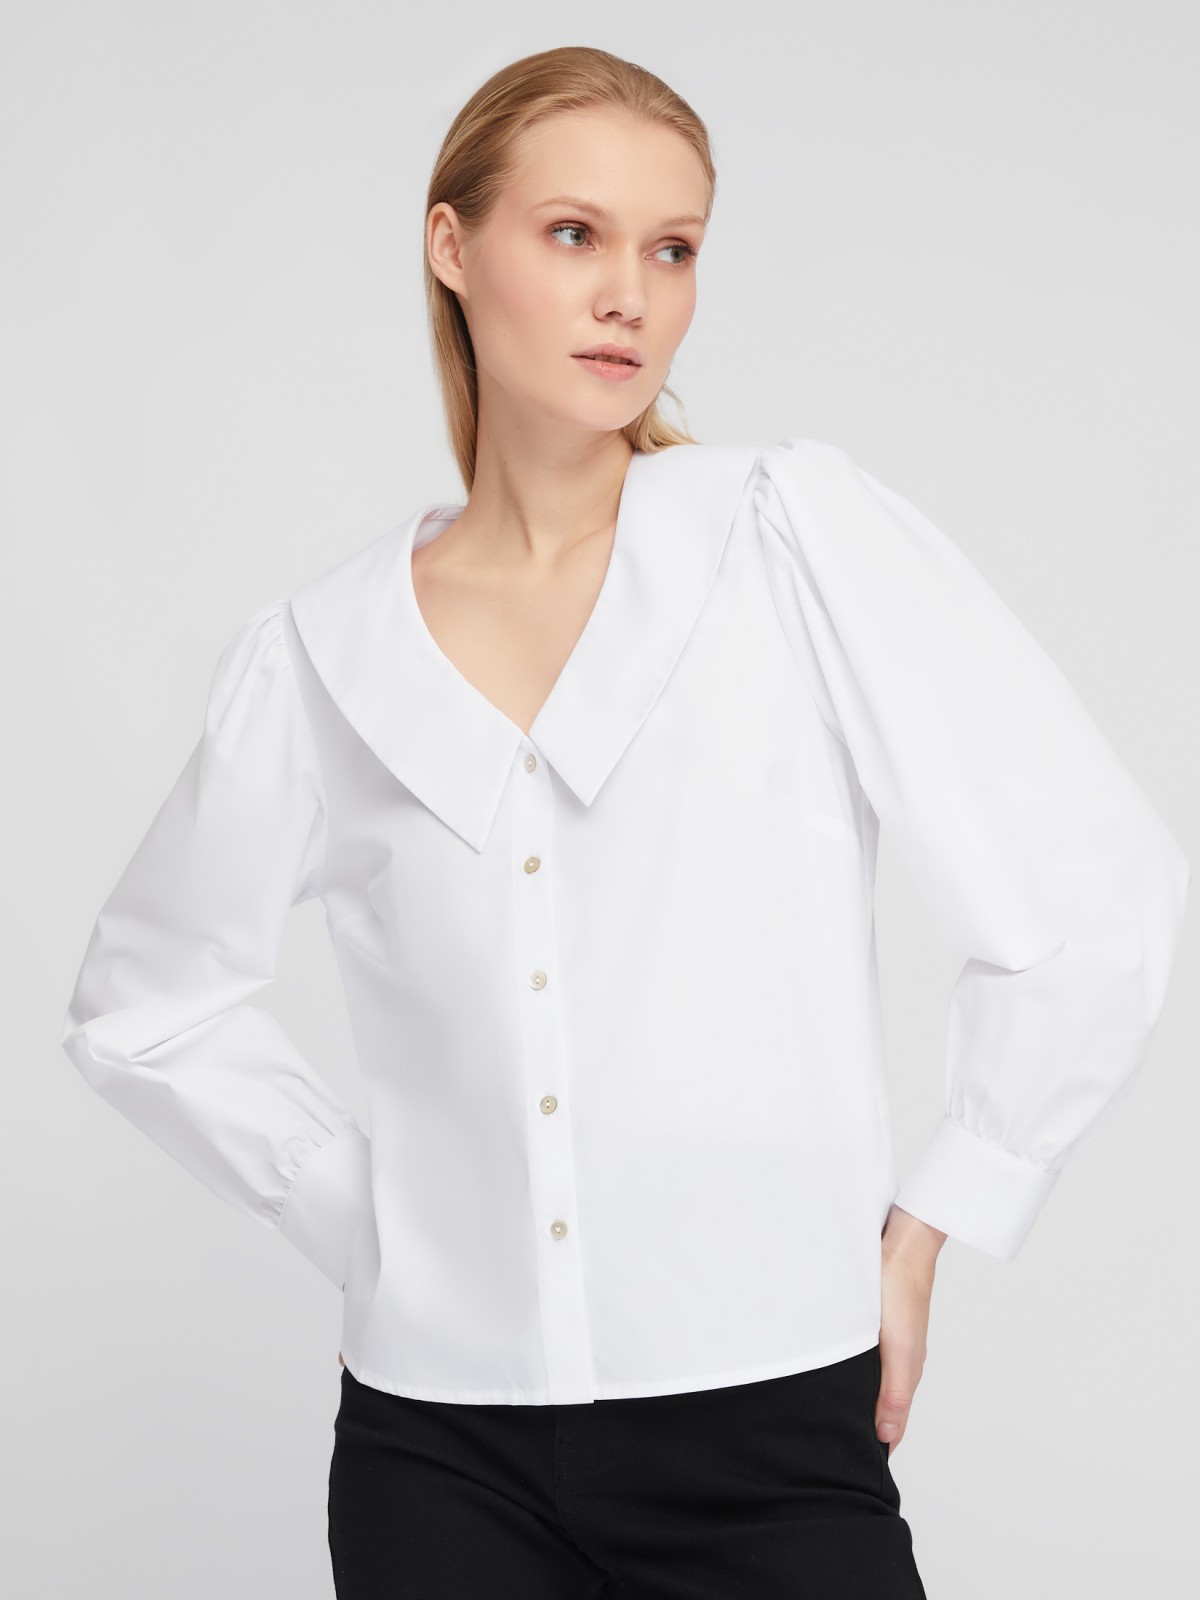 Блузка-рубашка с акцентным воротником и объёмными рукавами zolla 02411117Y593, цвет белый, размер XS - фото 1